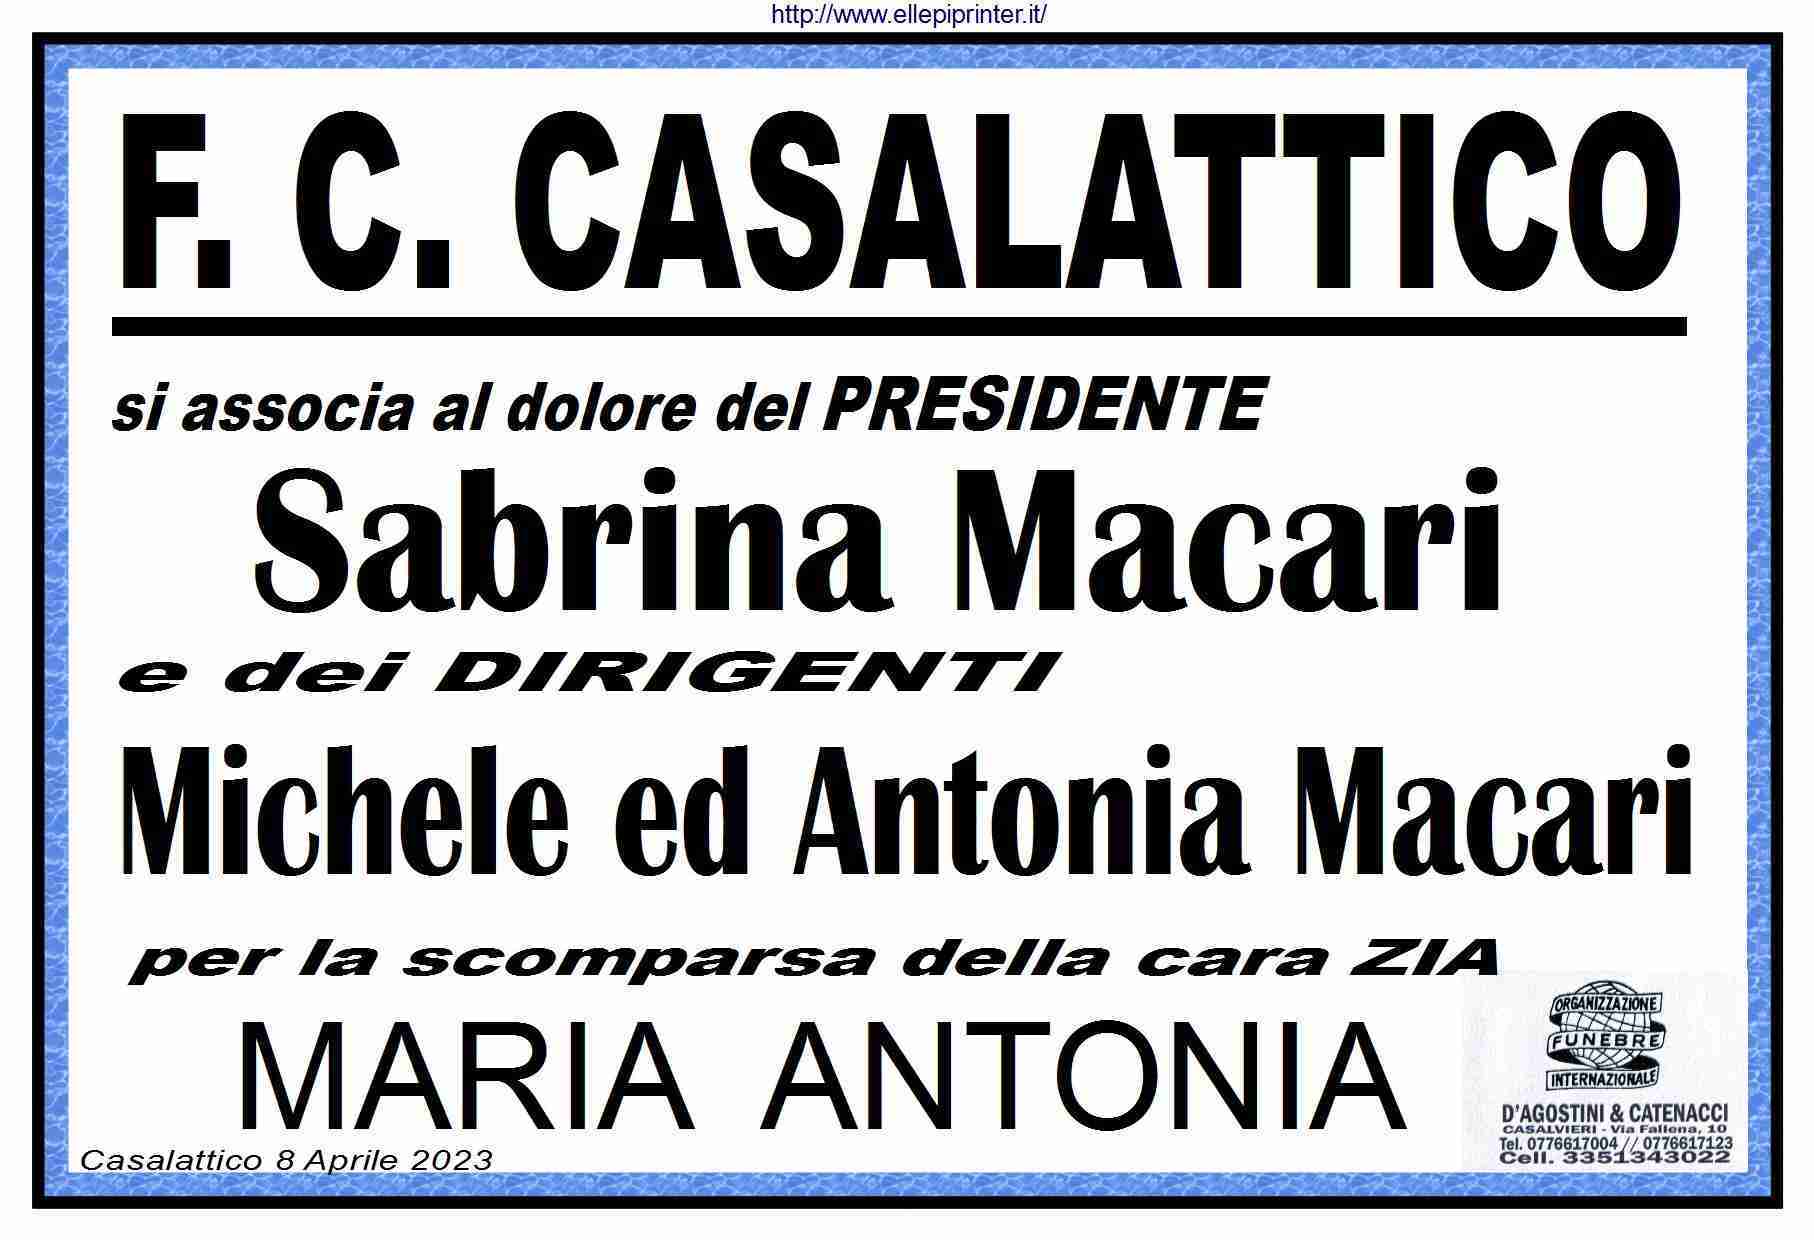 Maria Antonia Macari